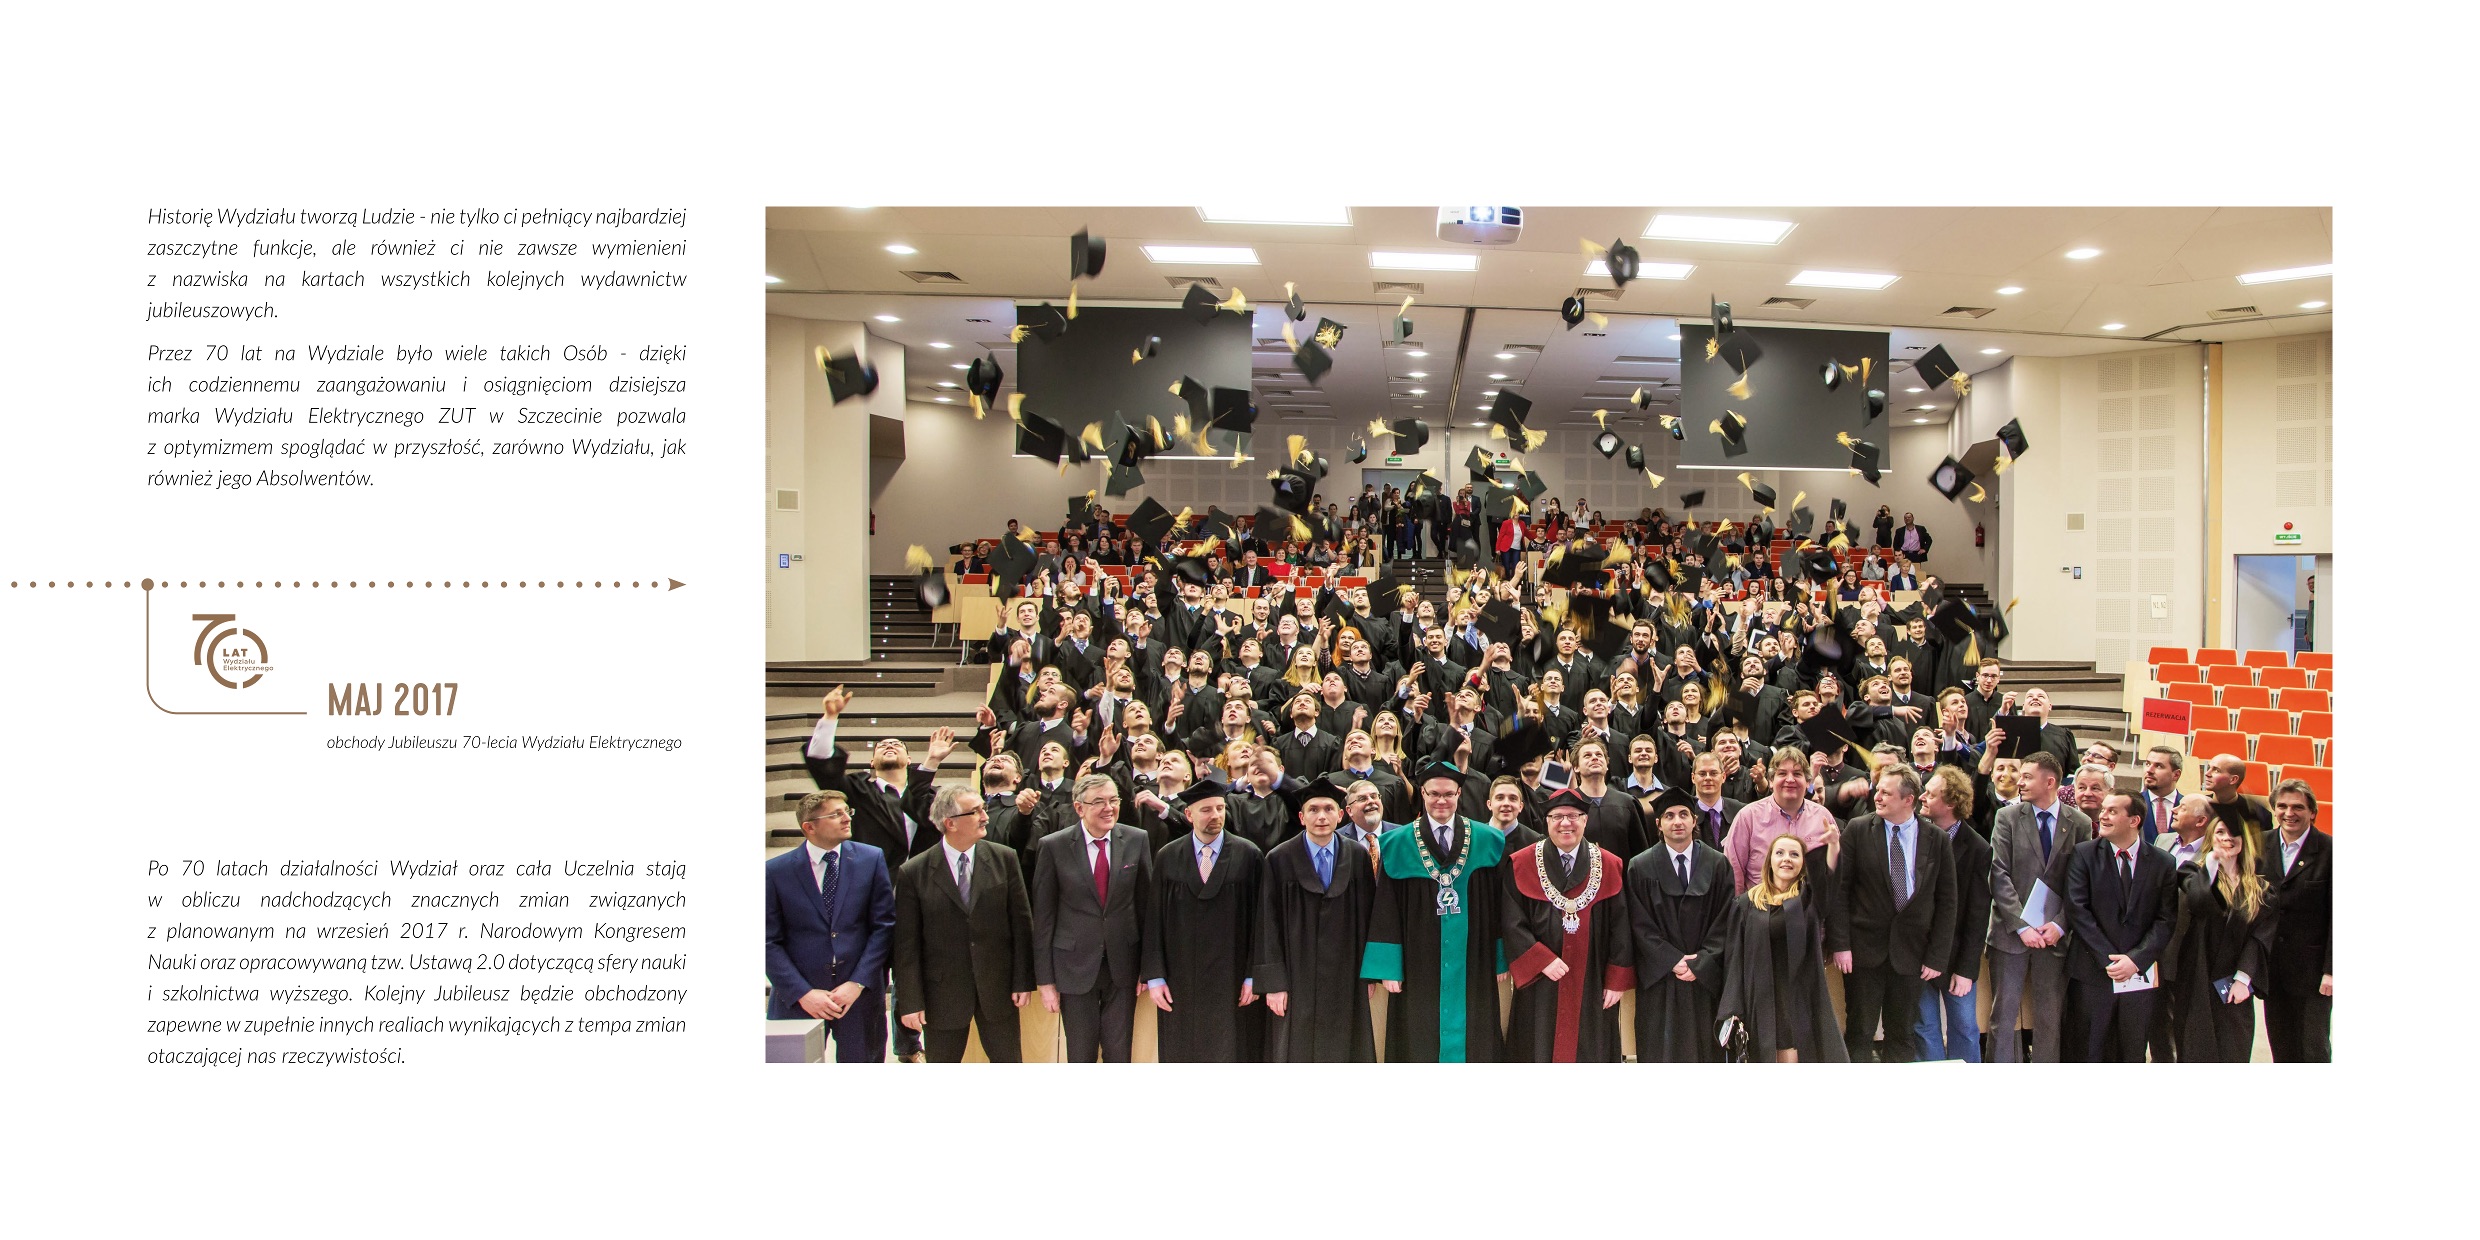 Zdjęcie  kończące poczet dziekanów - rozdanie dyplomów absolwentom - zdjęcie współczesne